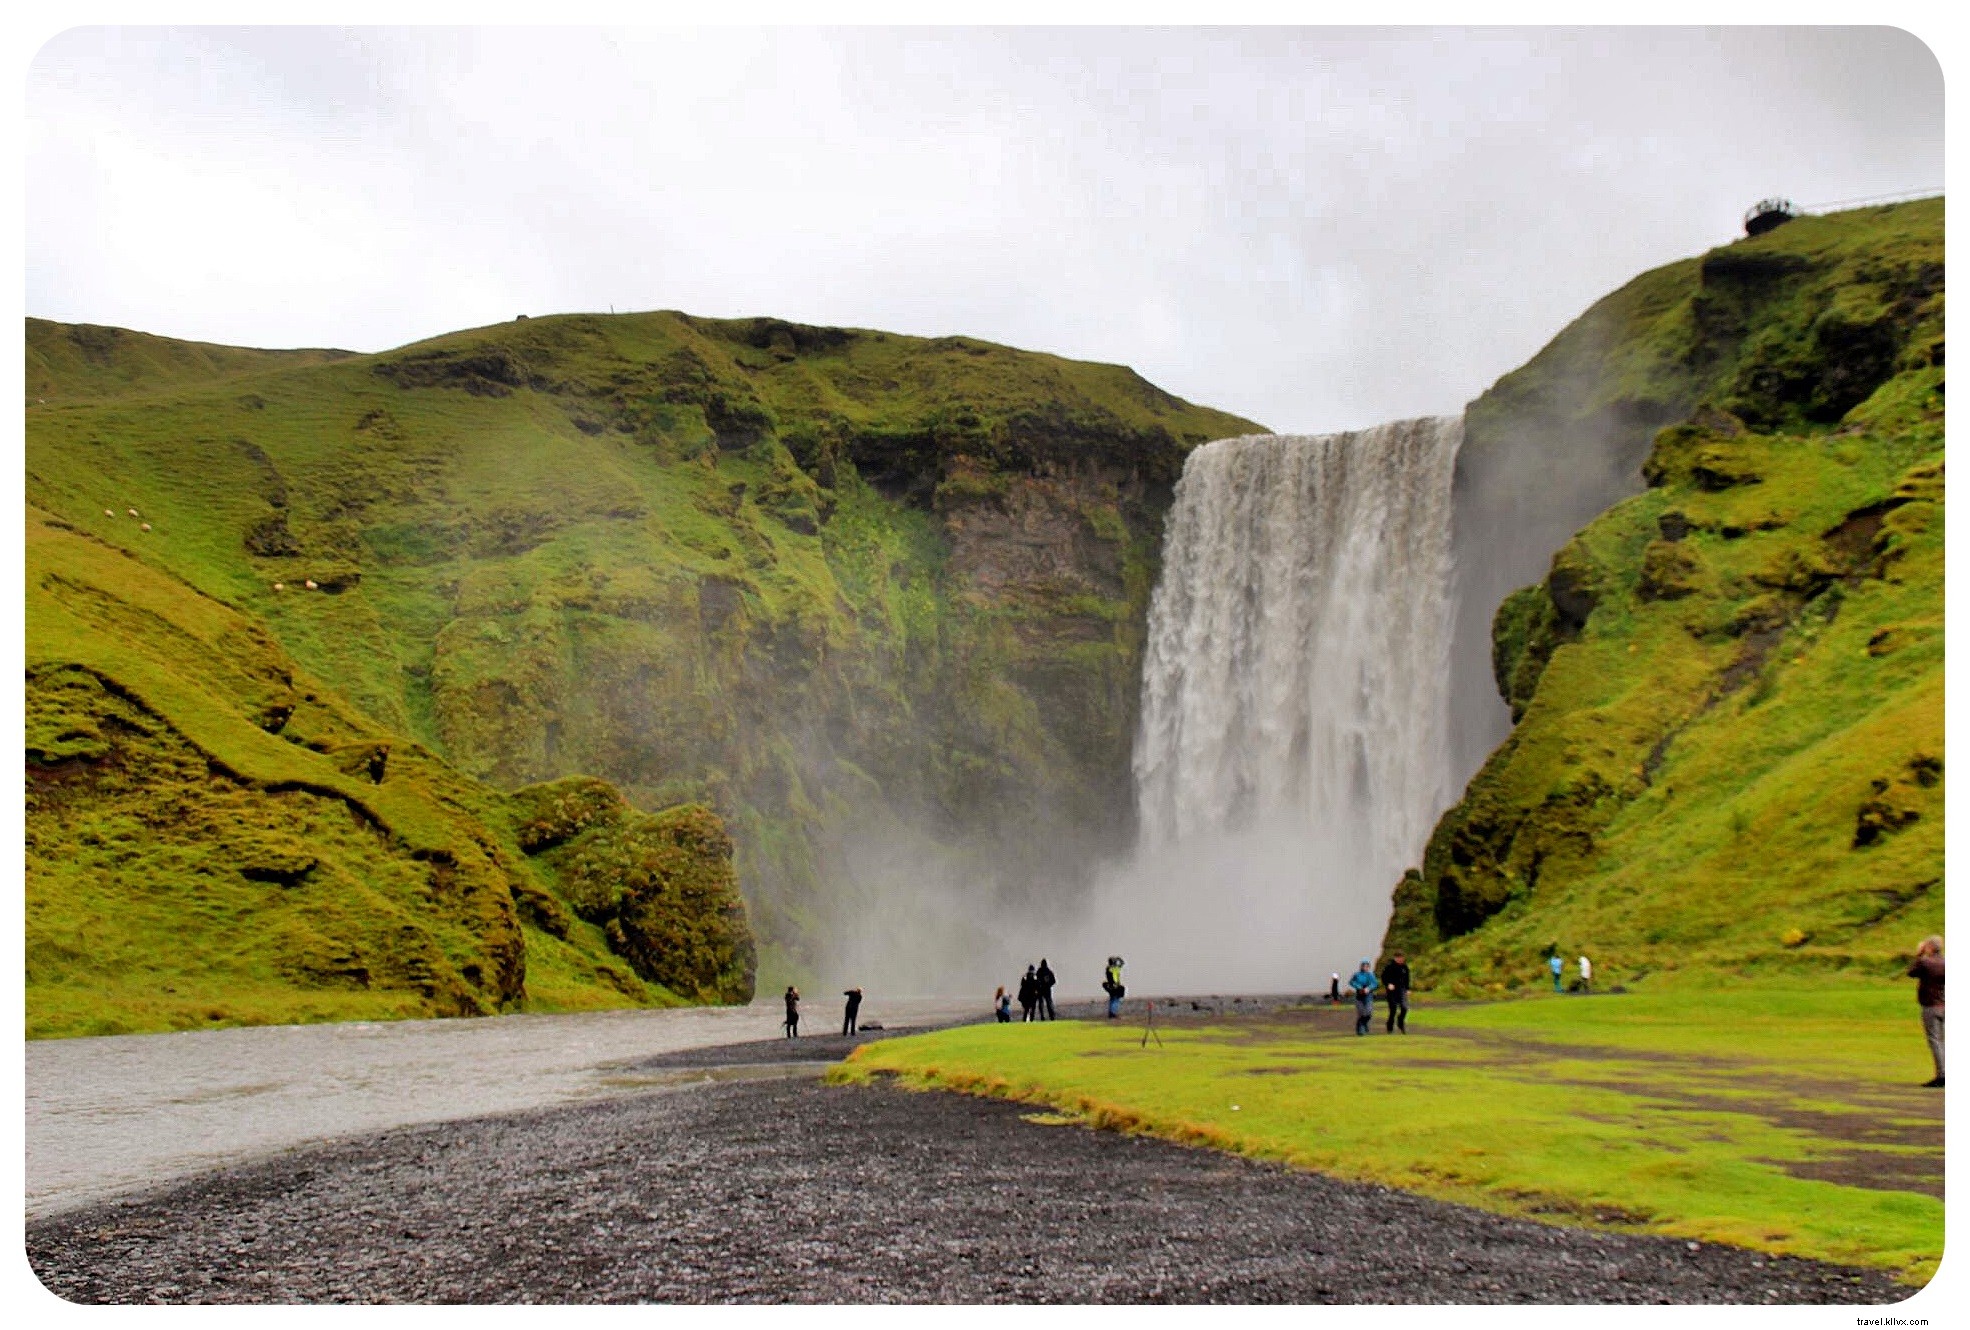 Tiga Alasan Mengapa Road Trip adalah Cara Terbaik untuk Melihat Islandia